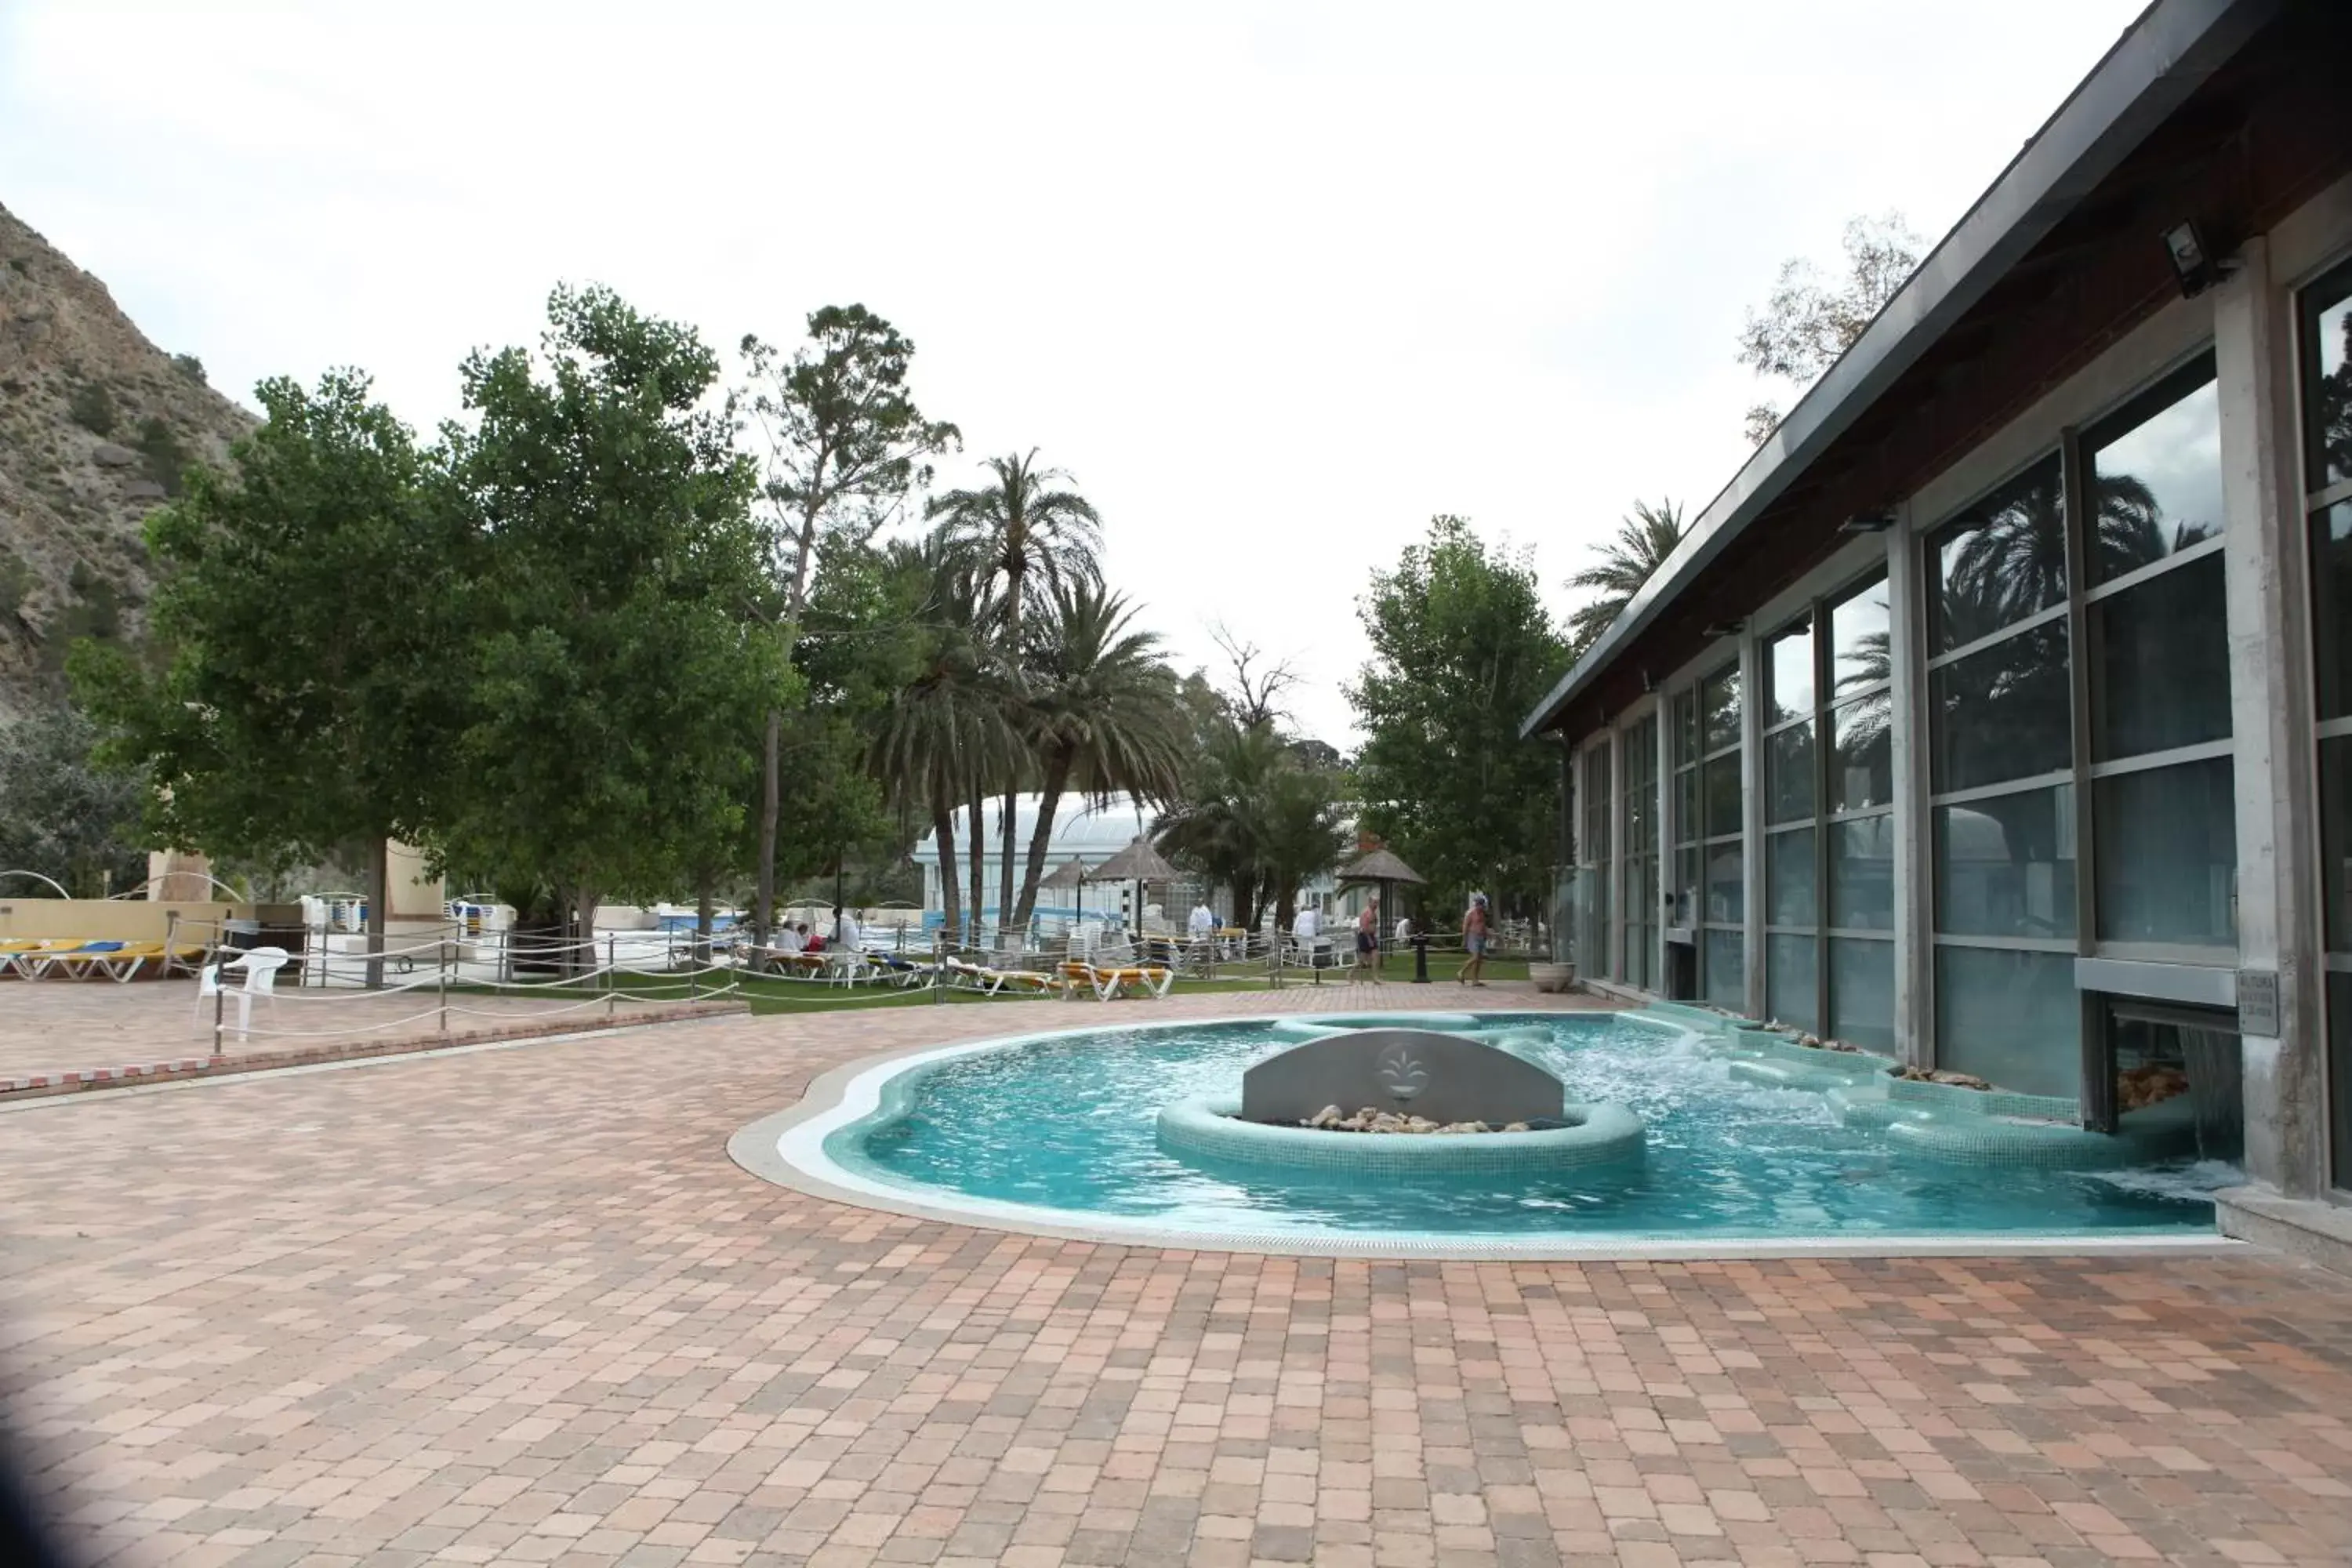 Spa and wellness centre/facilities, Swimming Pool in Balneario de Archena - Hotel Levante